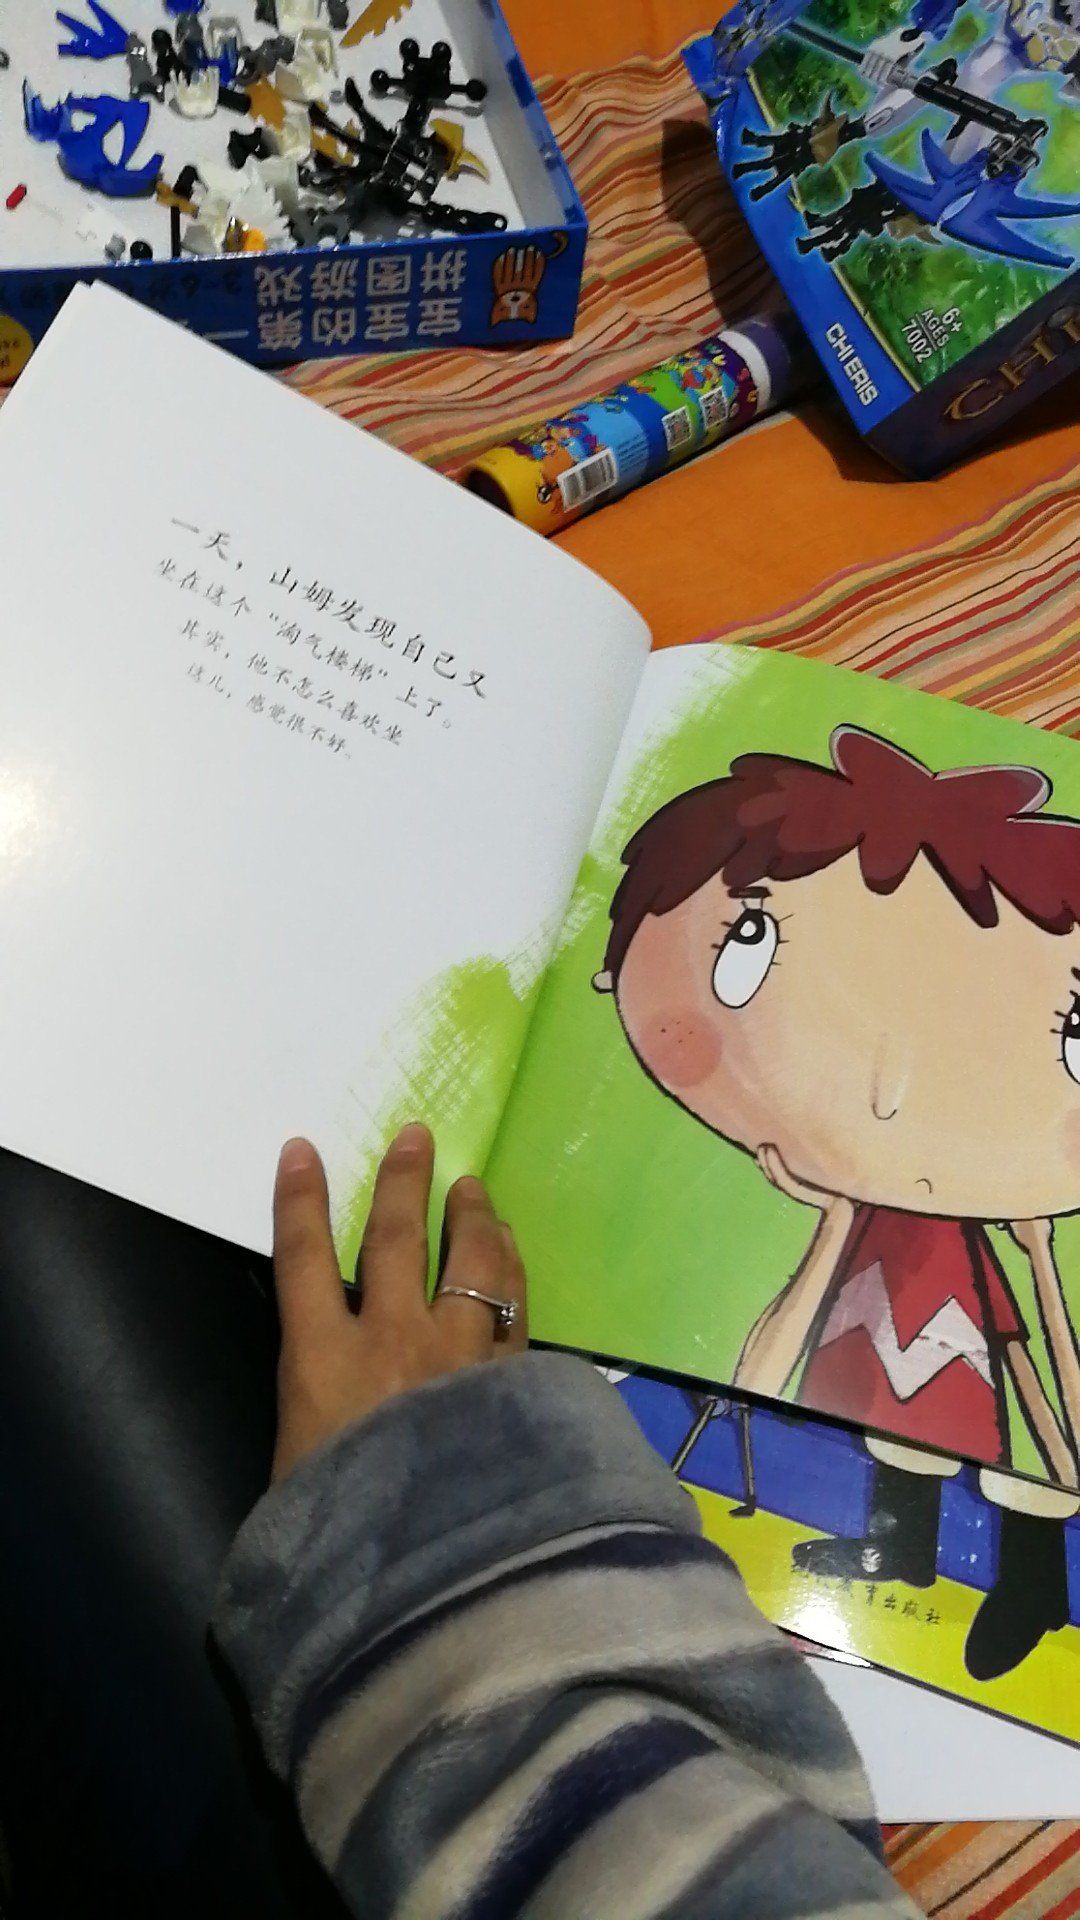 超级美丽超级华丽，给小孩子看，很喜欢，以后应该多出一些中国特色中国文化的书籍，幼儿时期教育很重要